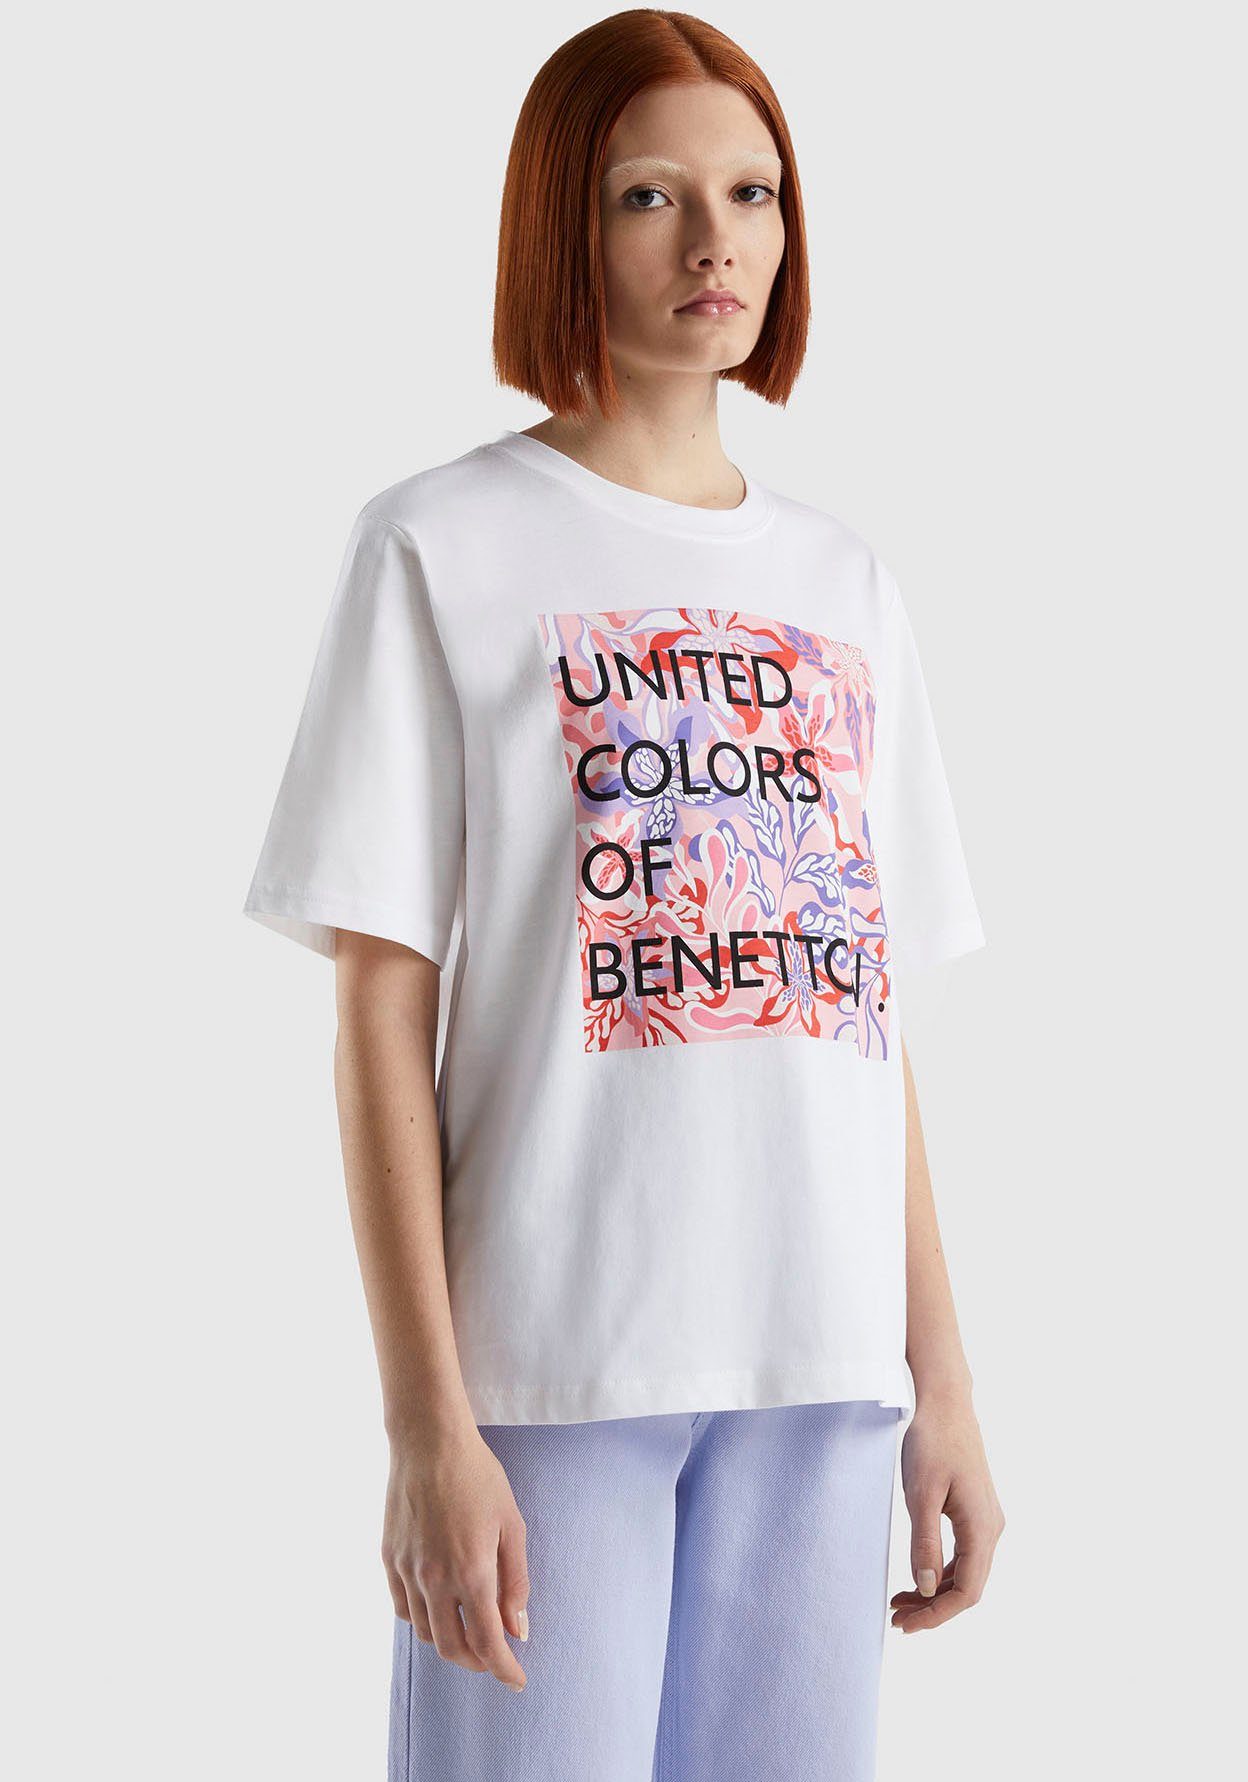 Jetzt günstiger Versandhandel möglich! United Colors of T-Shirt weiß Benetton pink mit